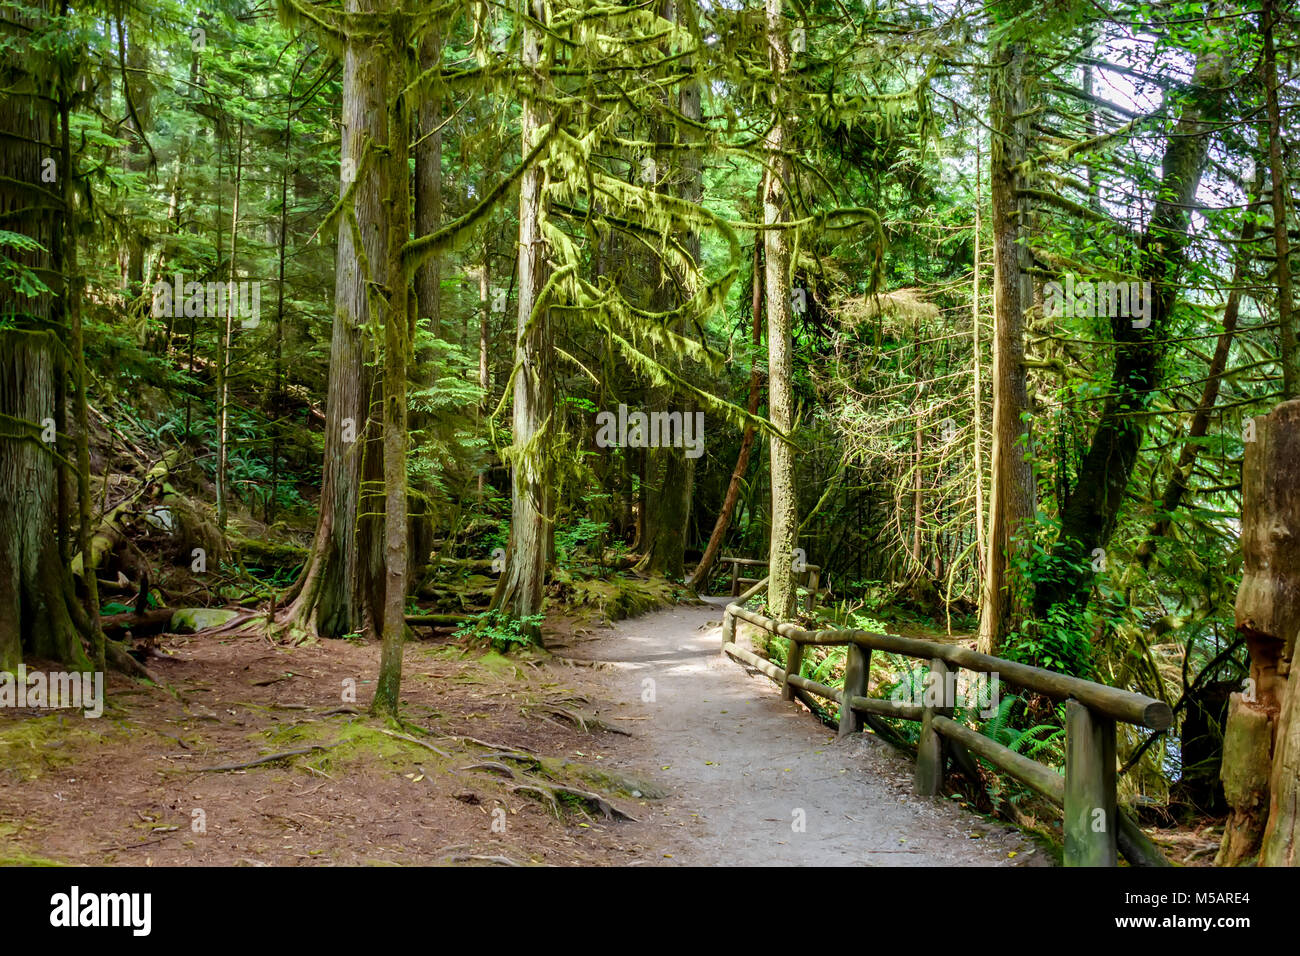 Un percorso di terracotta con una staccionata in legno percorso in una fitta foresta, con alti alberi verdi e le grandi radici in una limpida giornata estiva Foto Stock